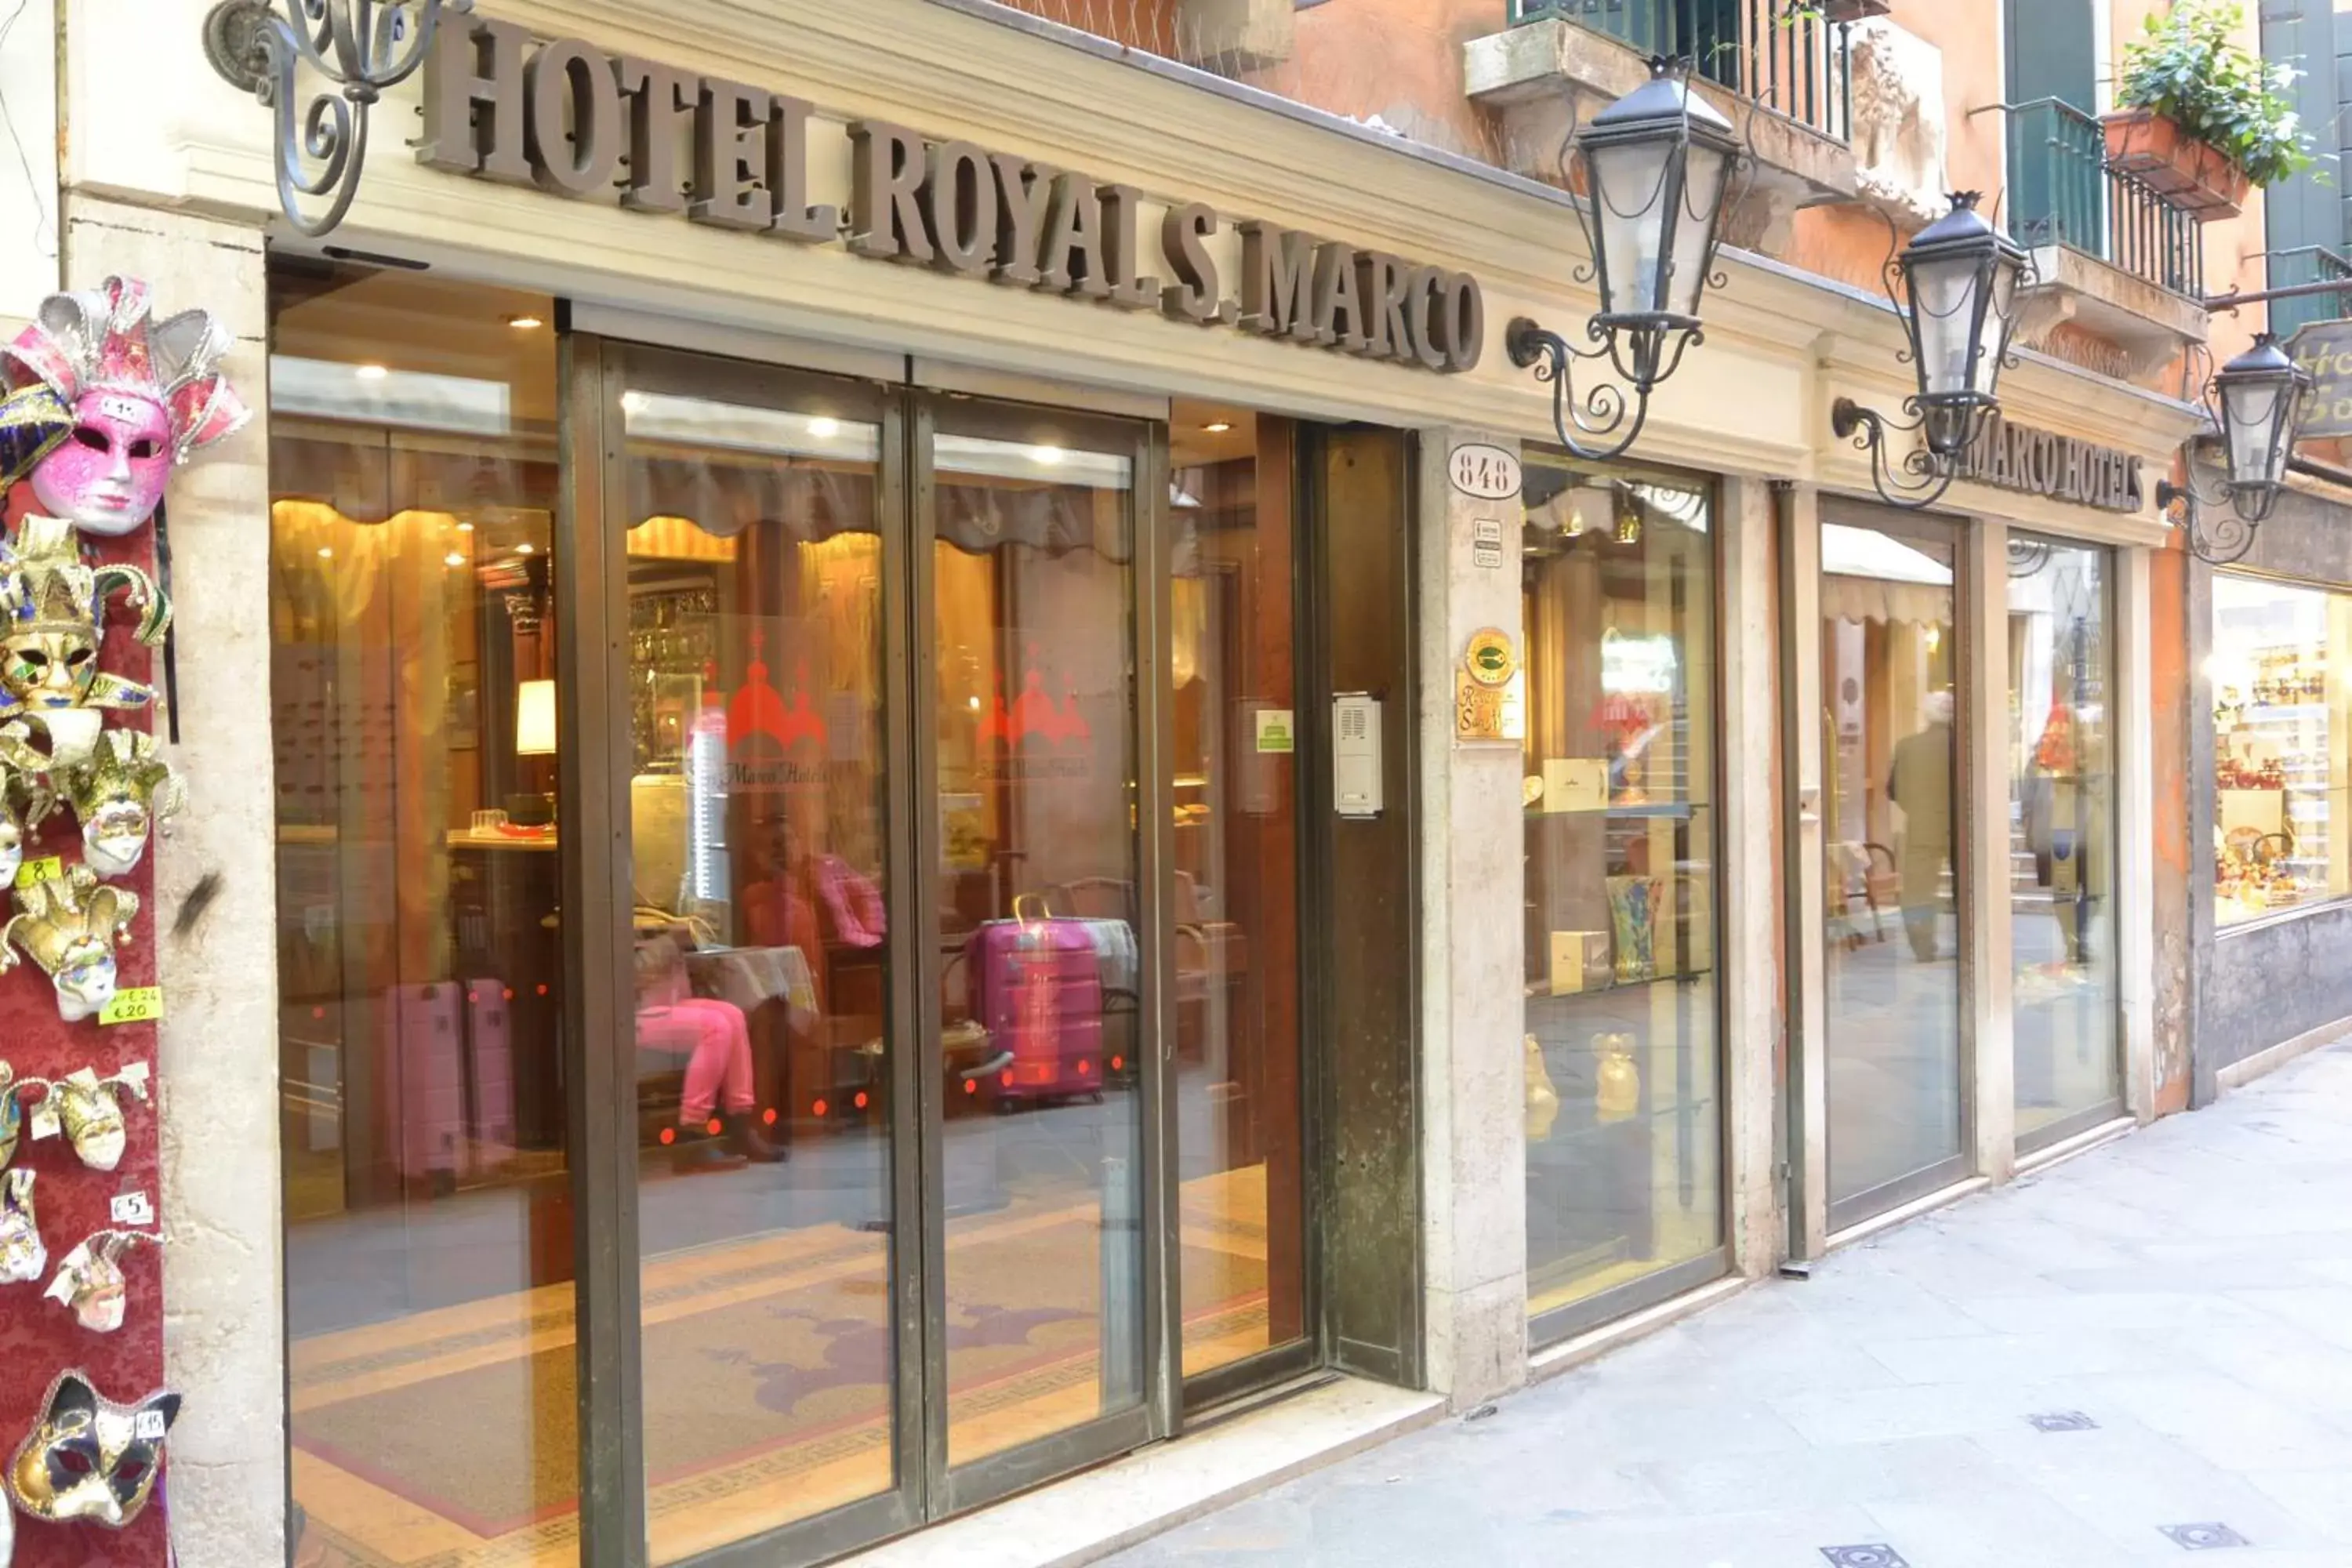 Facade/entrance in Royal San Marco Hotel